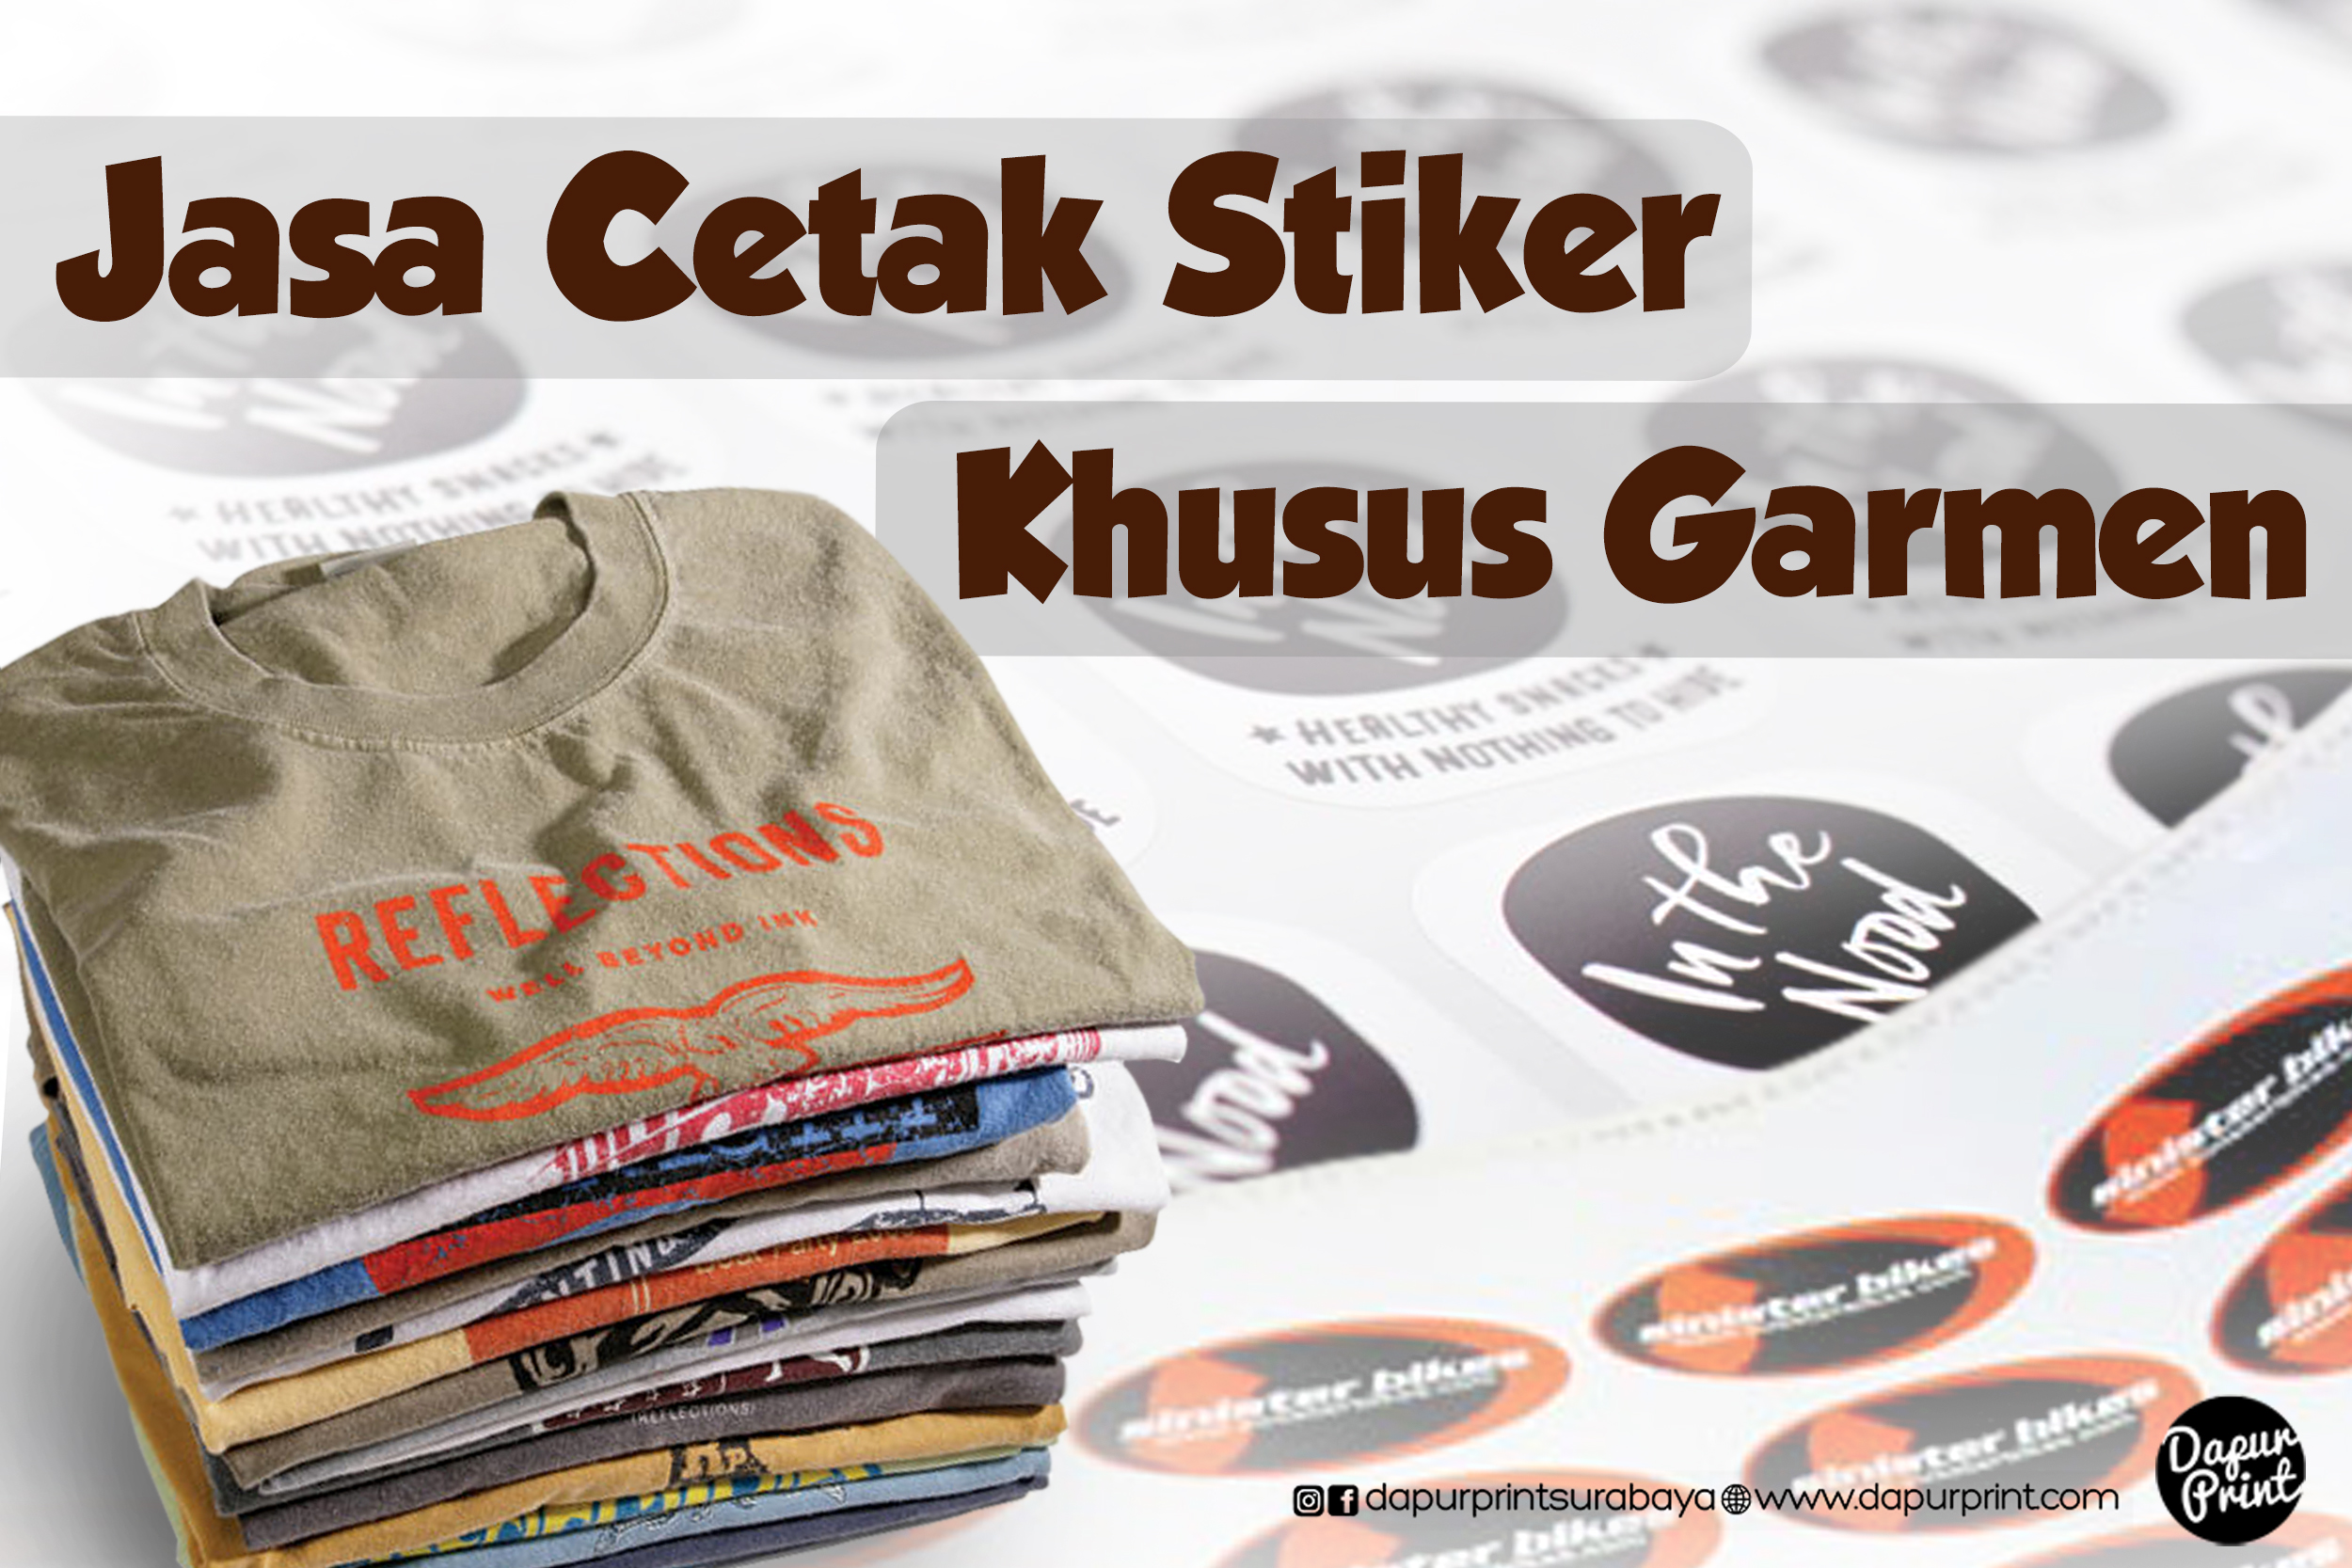 Jasa Cetak Stiker Khusus Garmen